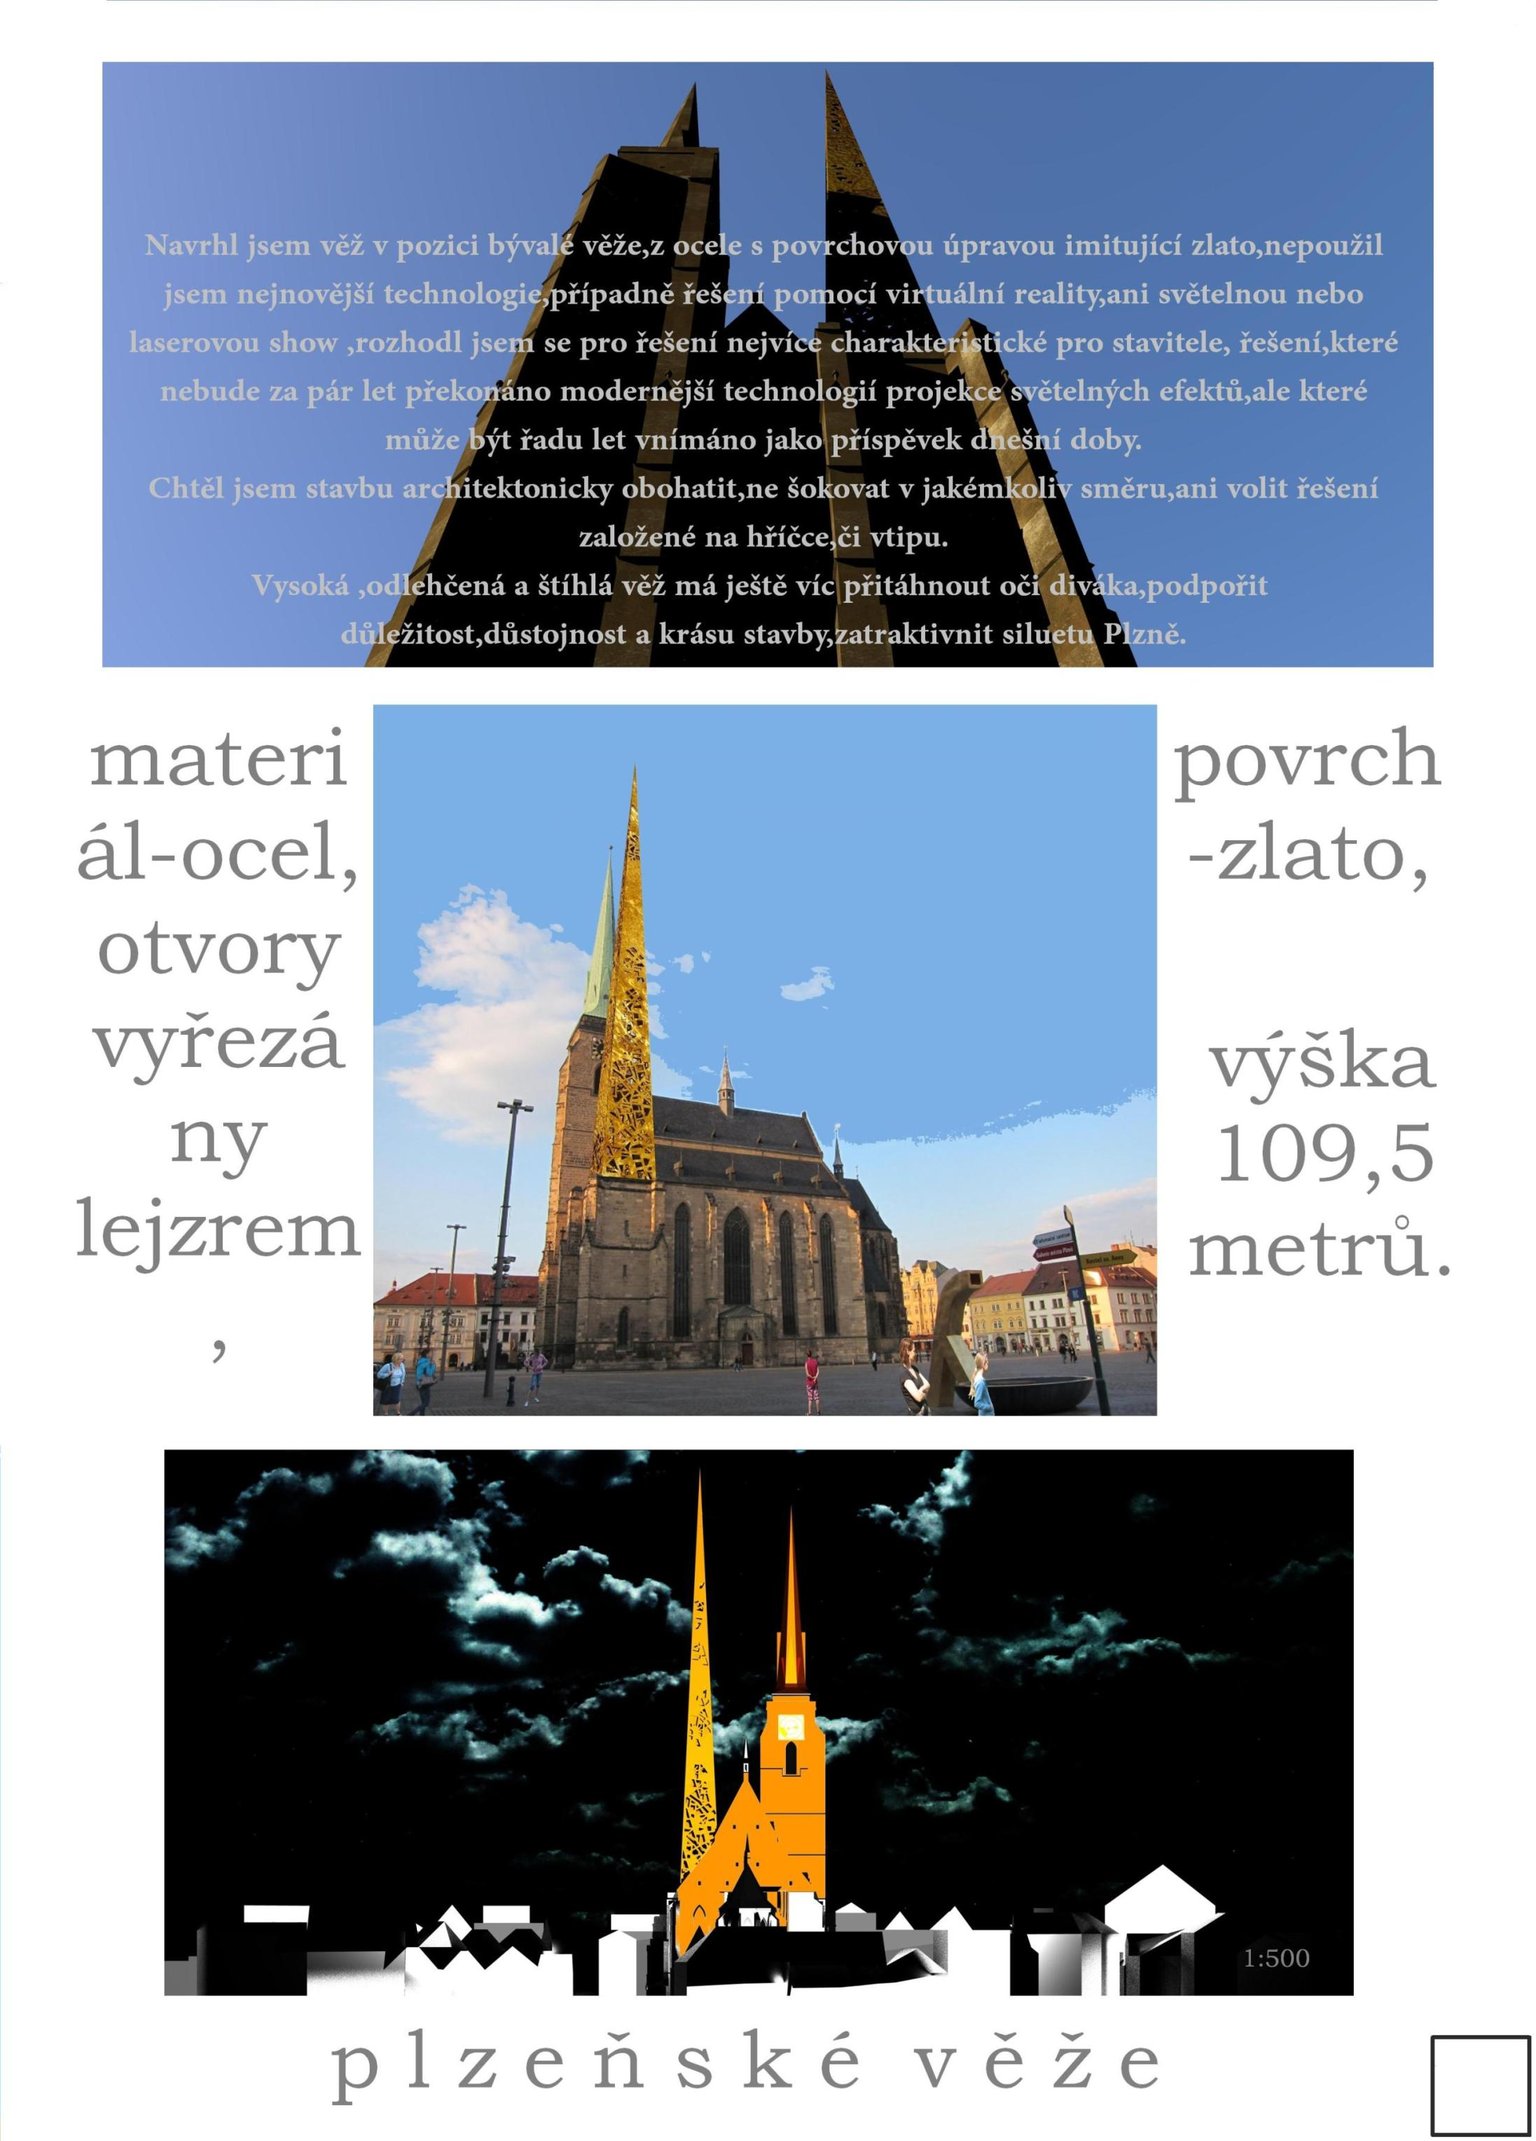 Návrh druhé věže katedrály sv. Bartoloměje v Plzni